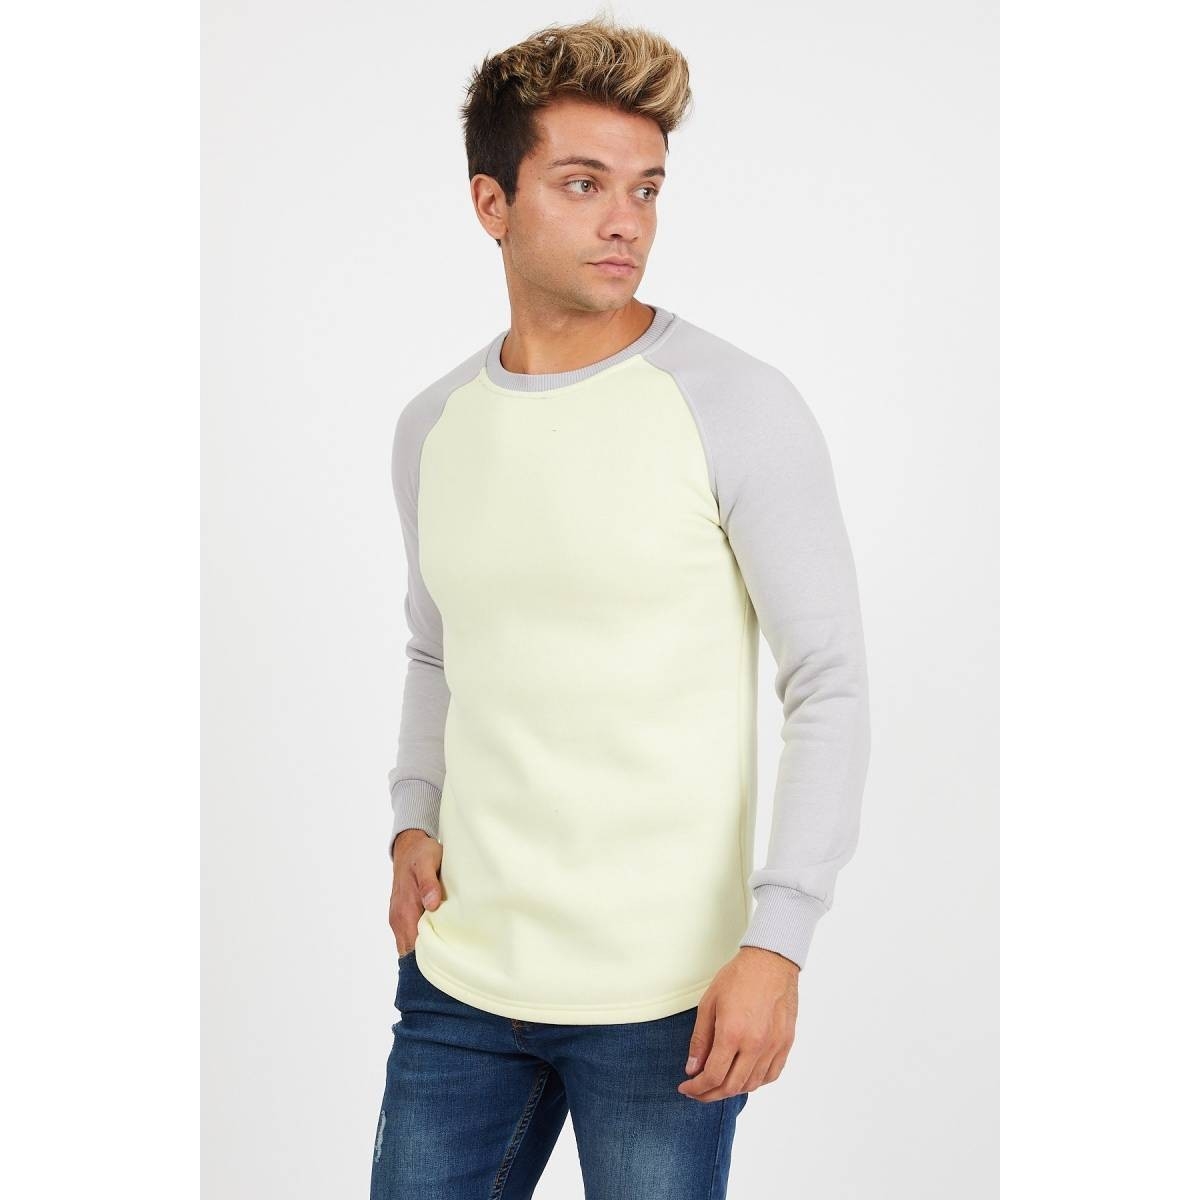 Flo Erkek Reglan Kol Sarı Sweatshirt - 61029. 1